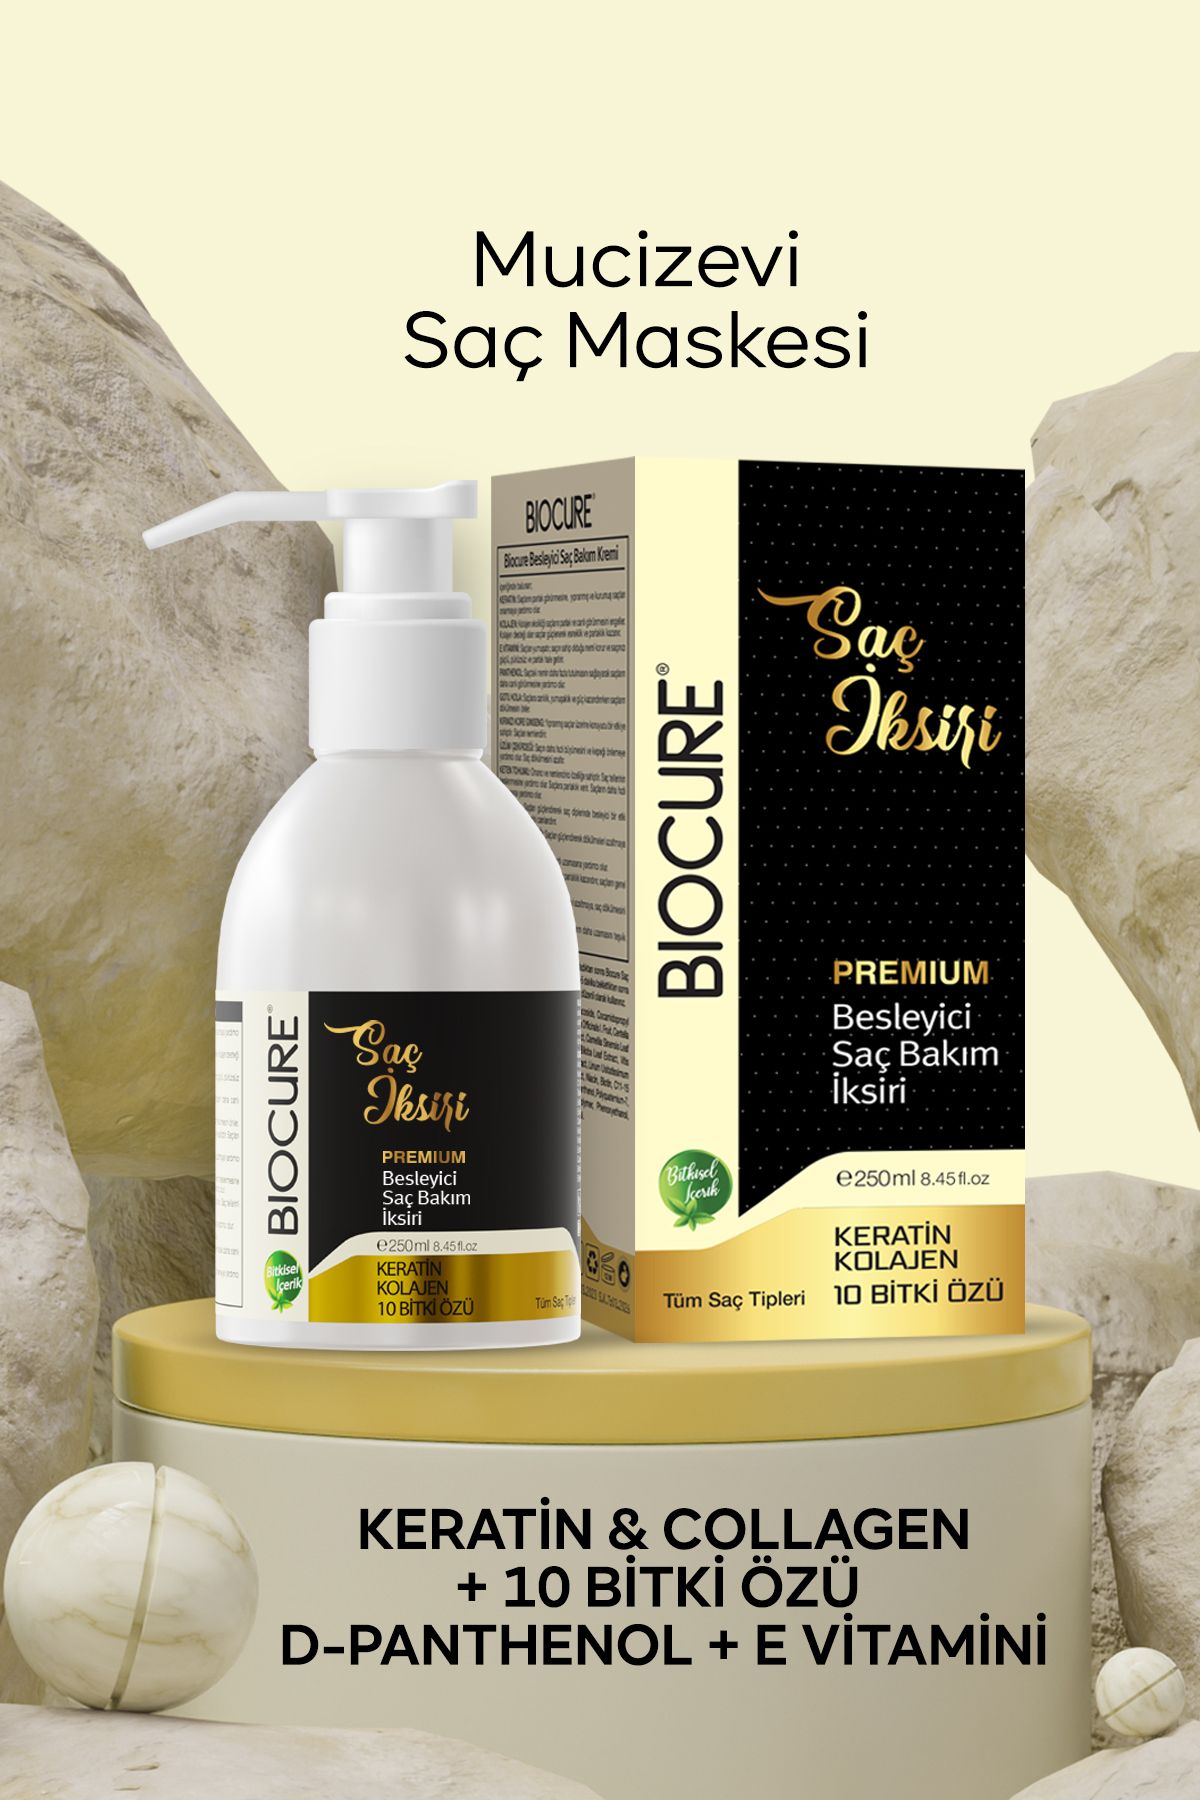 Biocure Saç Saç Iksiri Premium Besleyici Saç Bakım Maskesi Keratin Collagen 10 Bitki Özlü 250ml.